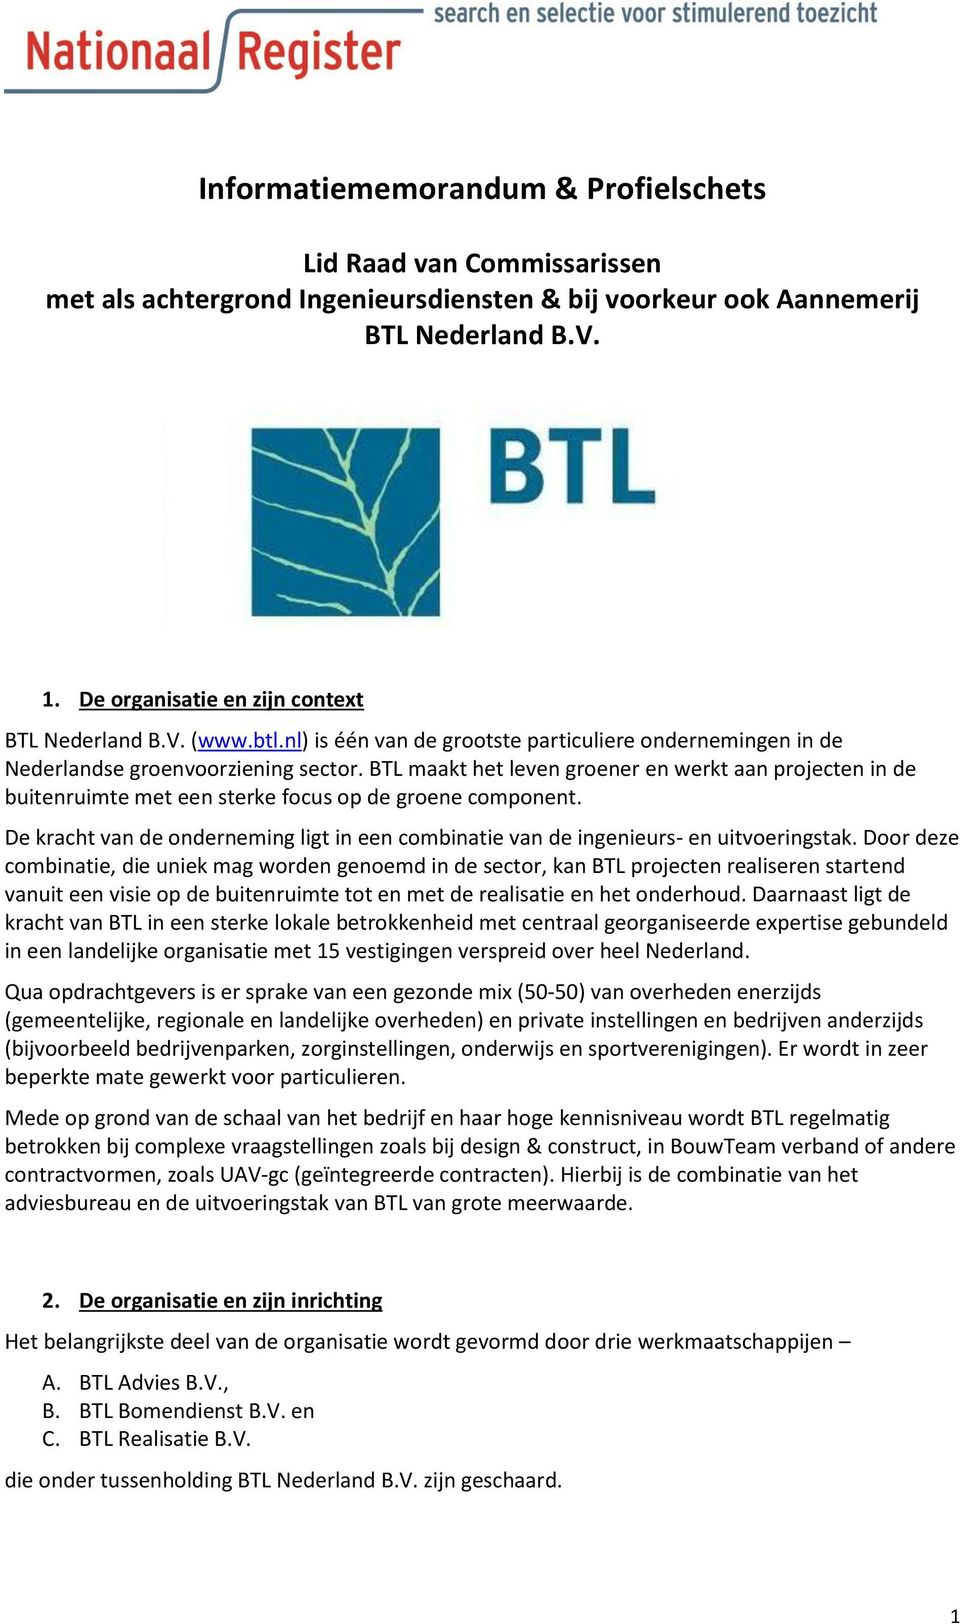 BTL maakt het leven groener en werkt aan projecten in de buitenruimte met een sterke focus op de groene component.